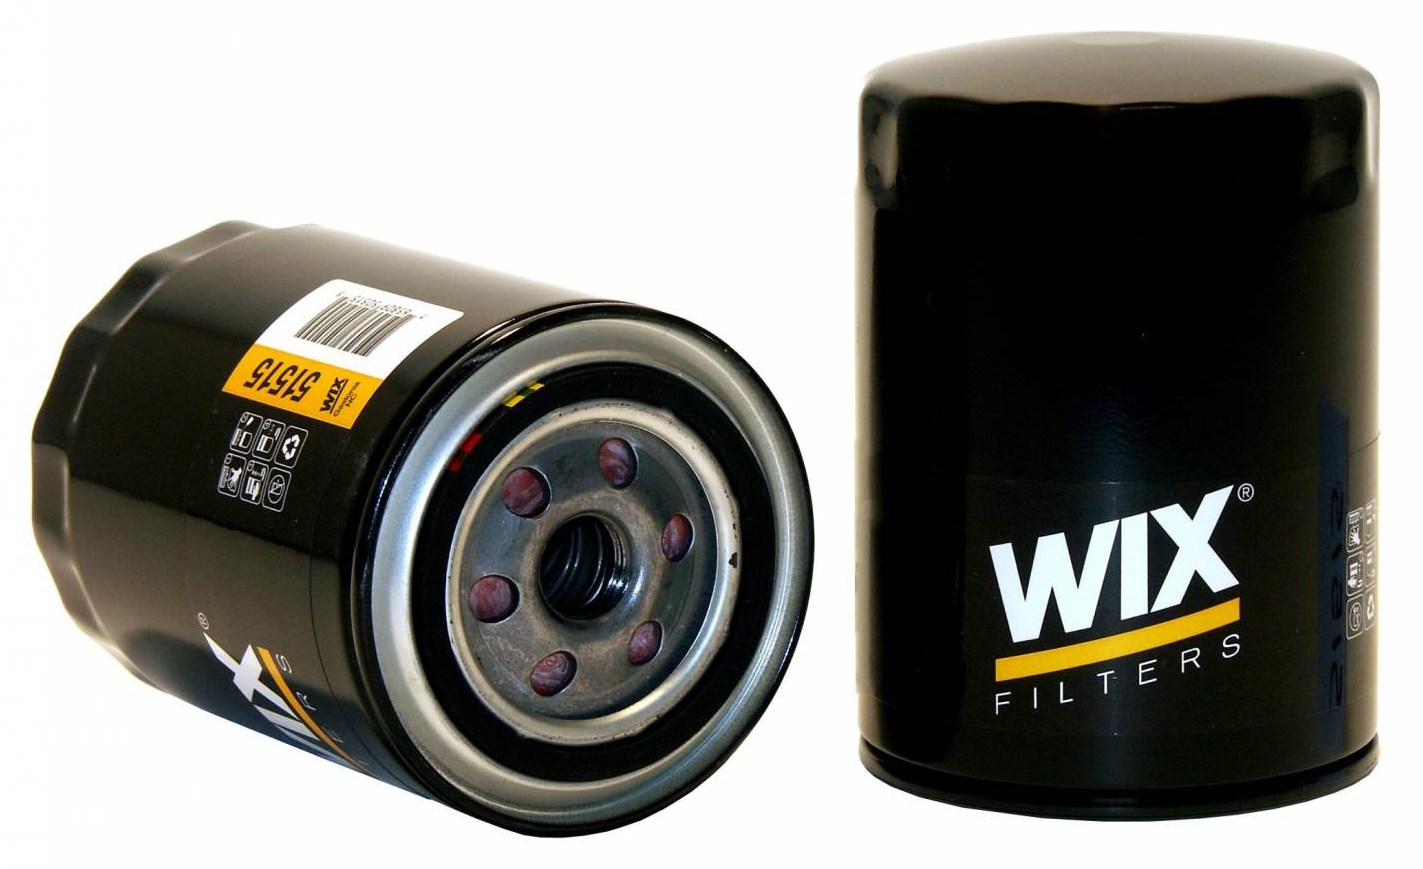 Standard WIX Oil Filter for pushrod V8